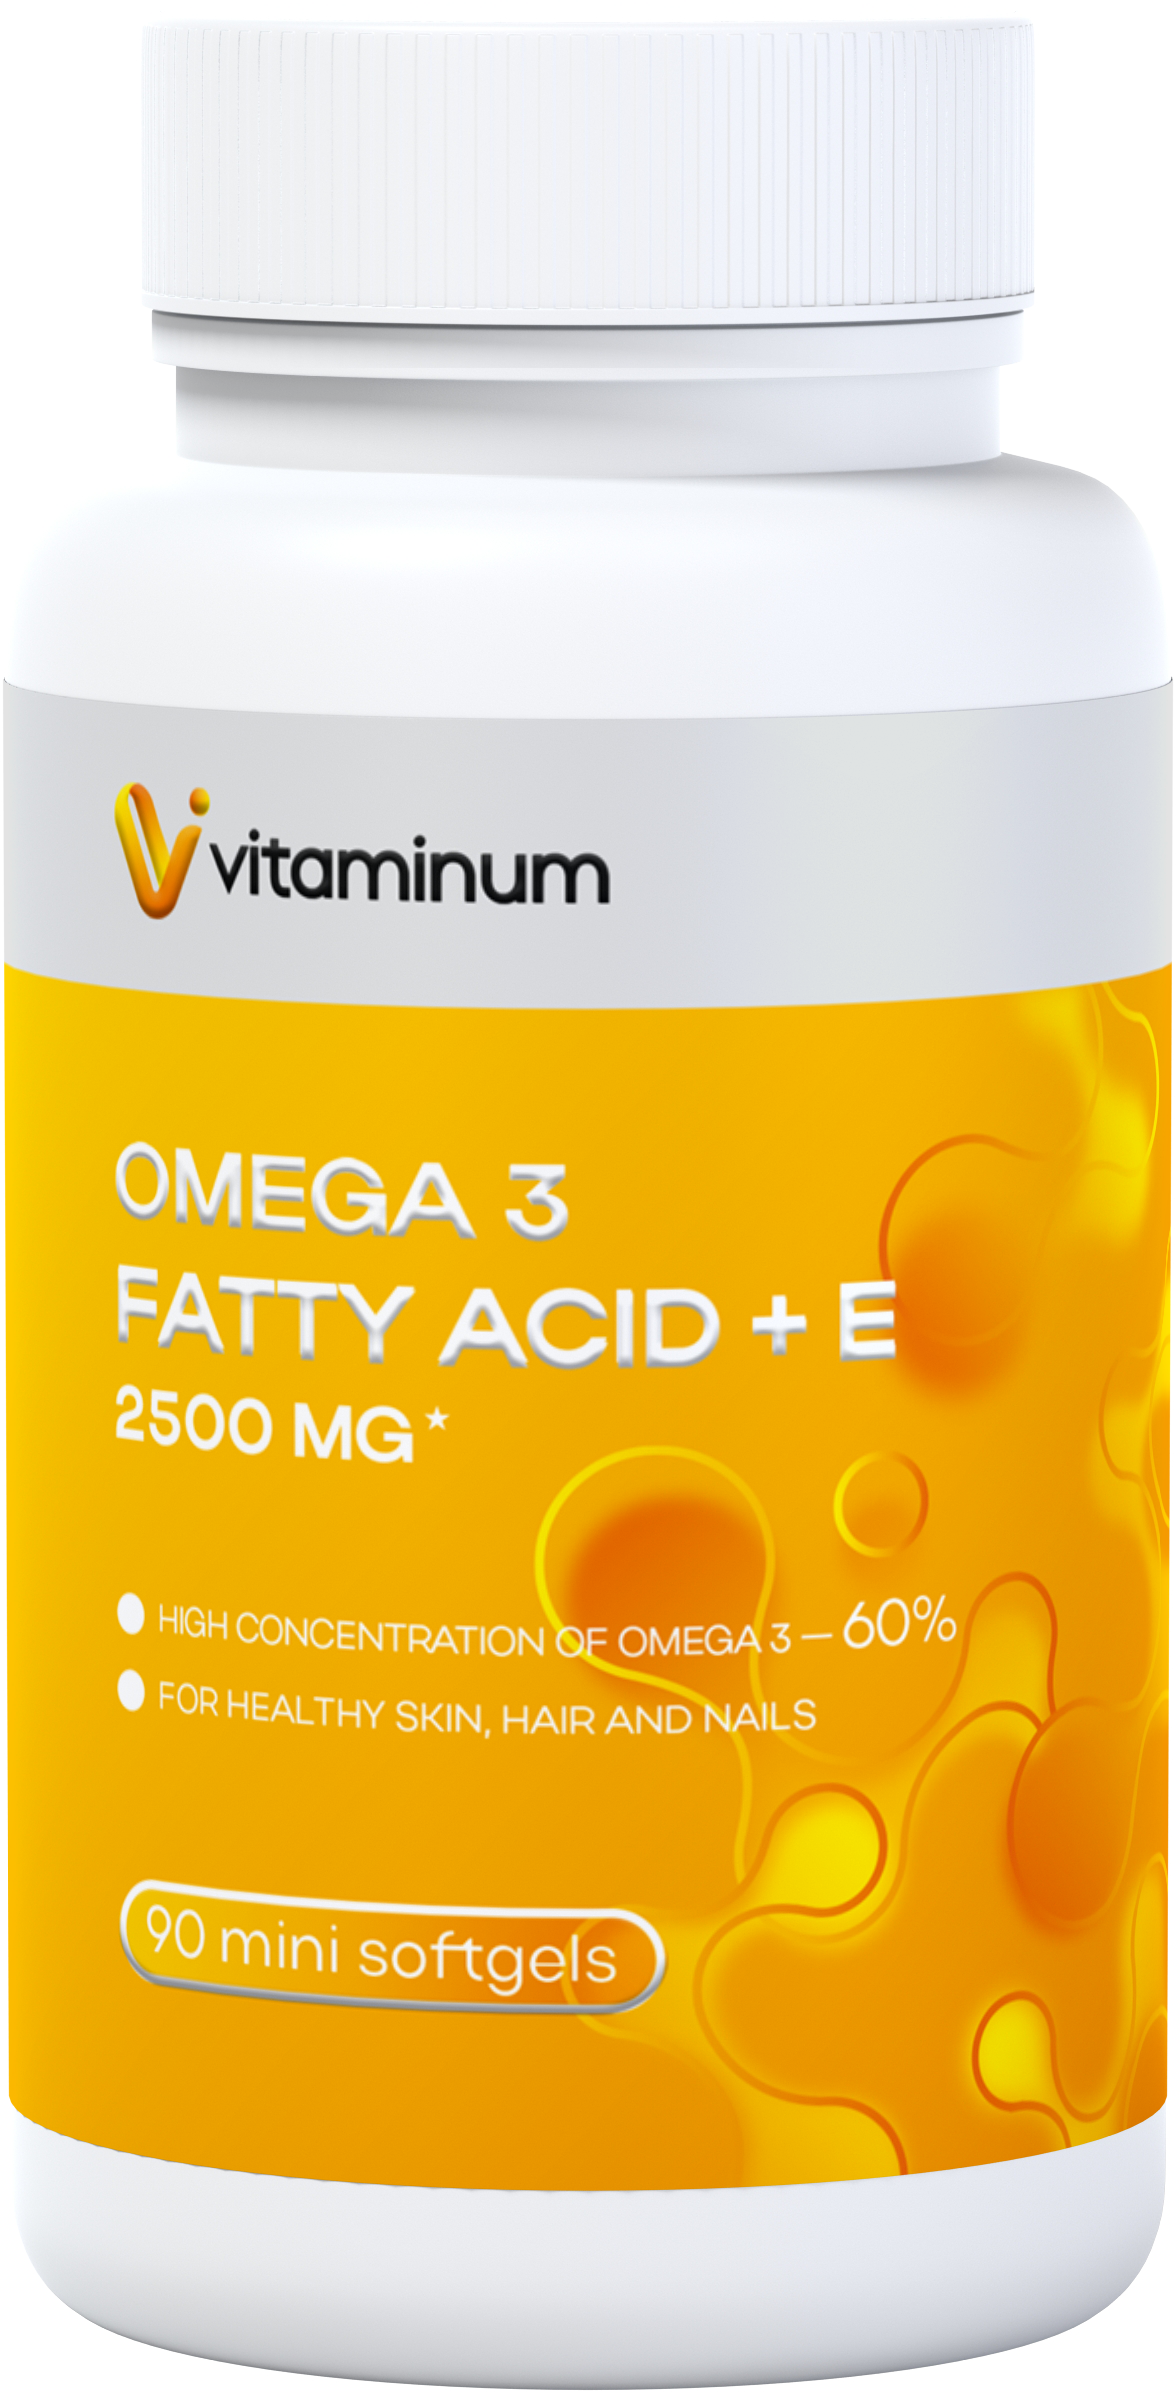  Vitaminum ОМЕГА 3 60% + витамин Е (2500 MG*) 90 капсул 700 мг   в Минусинске